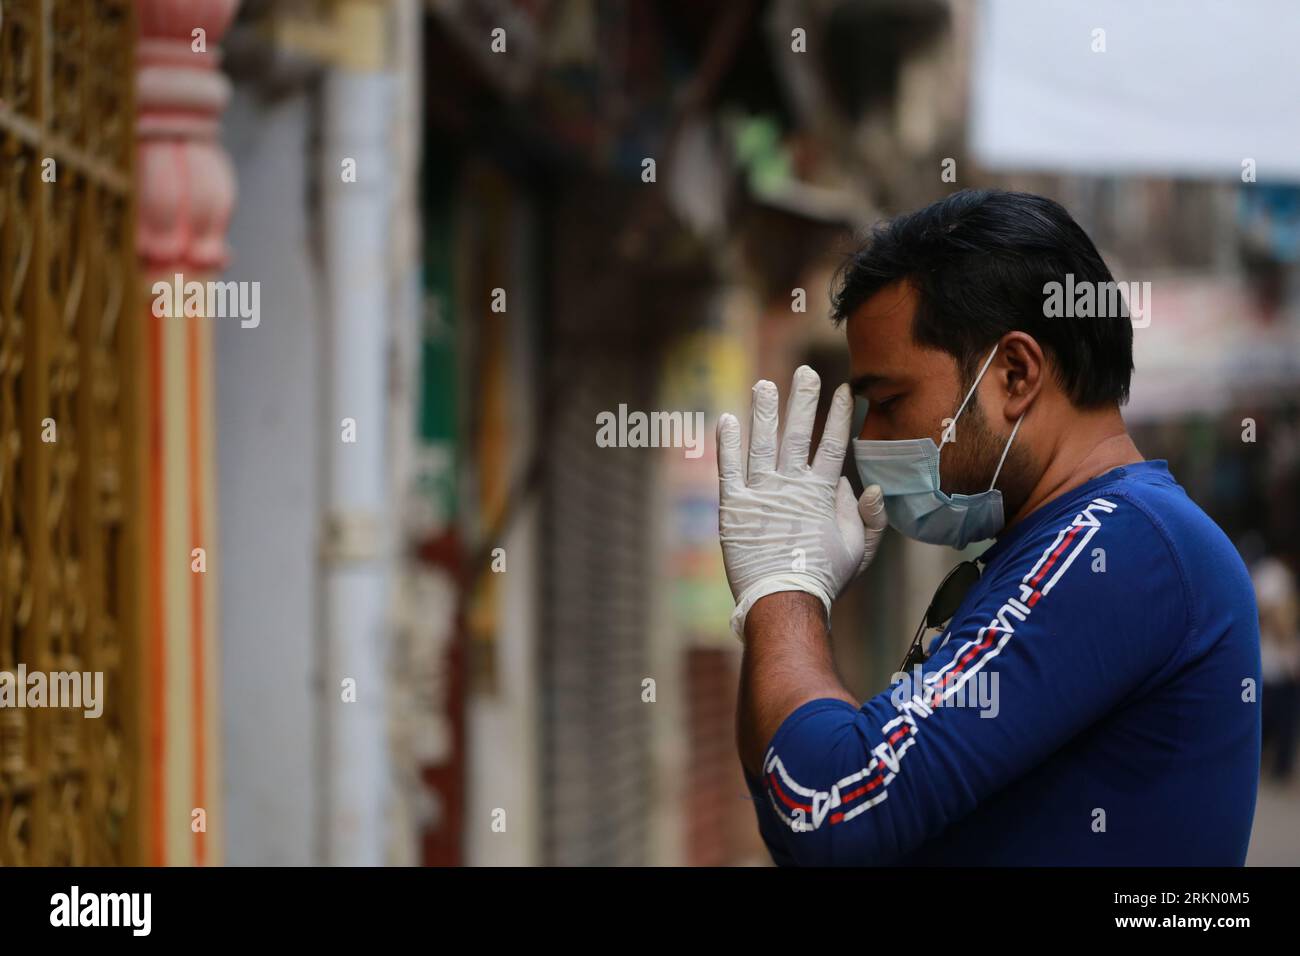 DHAKA, BANGLADESH - 31 MARS 2020 : un dévot hindou porte un masque facial et des gants pour prier devant un temple pendant le confinement national en tant que mesure préventive contre l’épidémie de coronavirus COVID-19, à Dhaka, Bangladesh, le 31 mars 2020. Banque D'Images